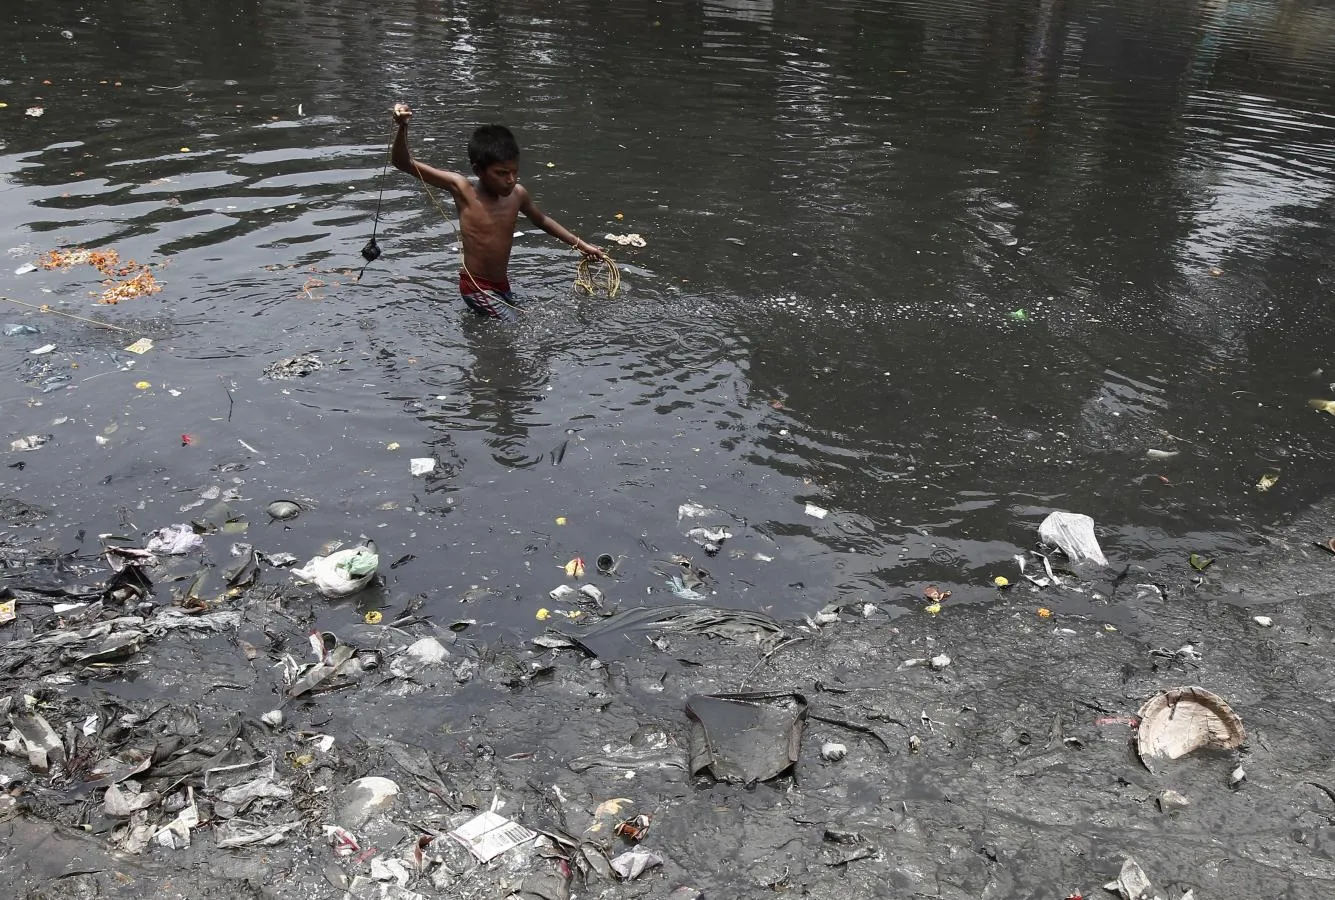 Негритята купаются. Река в Индии ганг самая грязная.